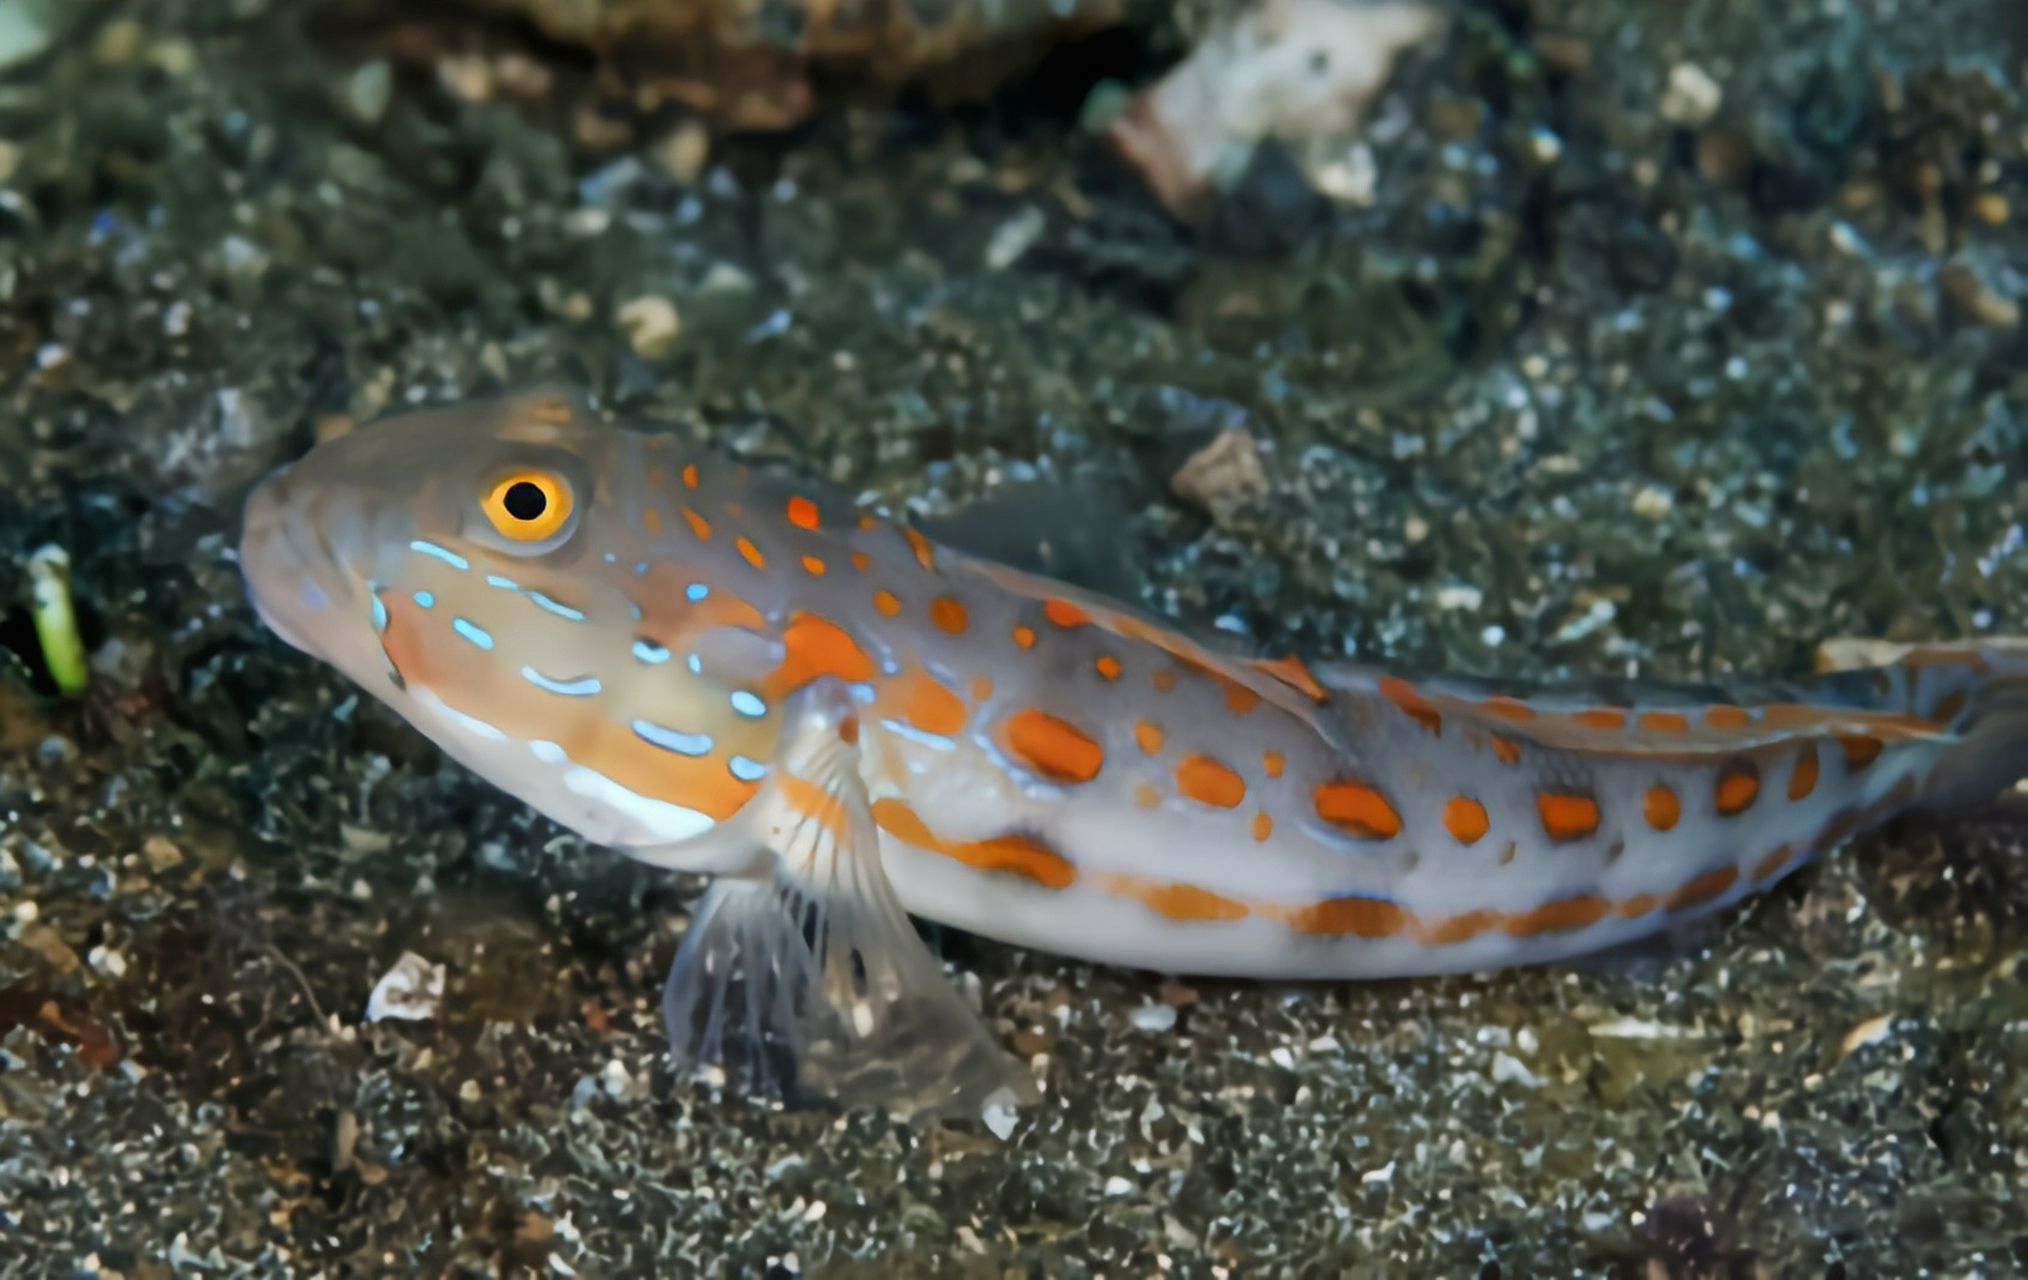 它是一种小型浅水鱼类,体长11厘米,体色灰褐色带有鲜艳的橘色斑点